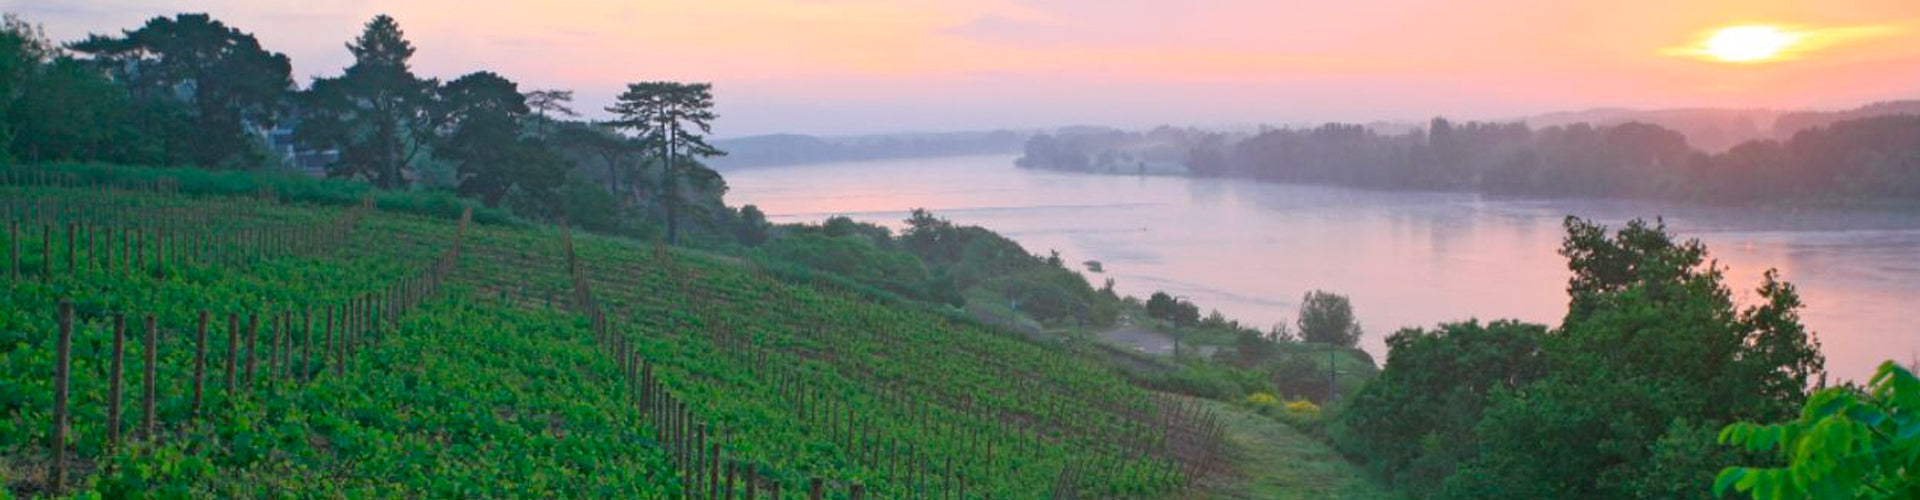 Riverside vineyards in Anjou, Loire Valley